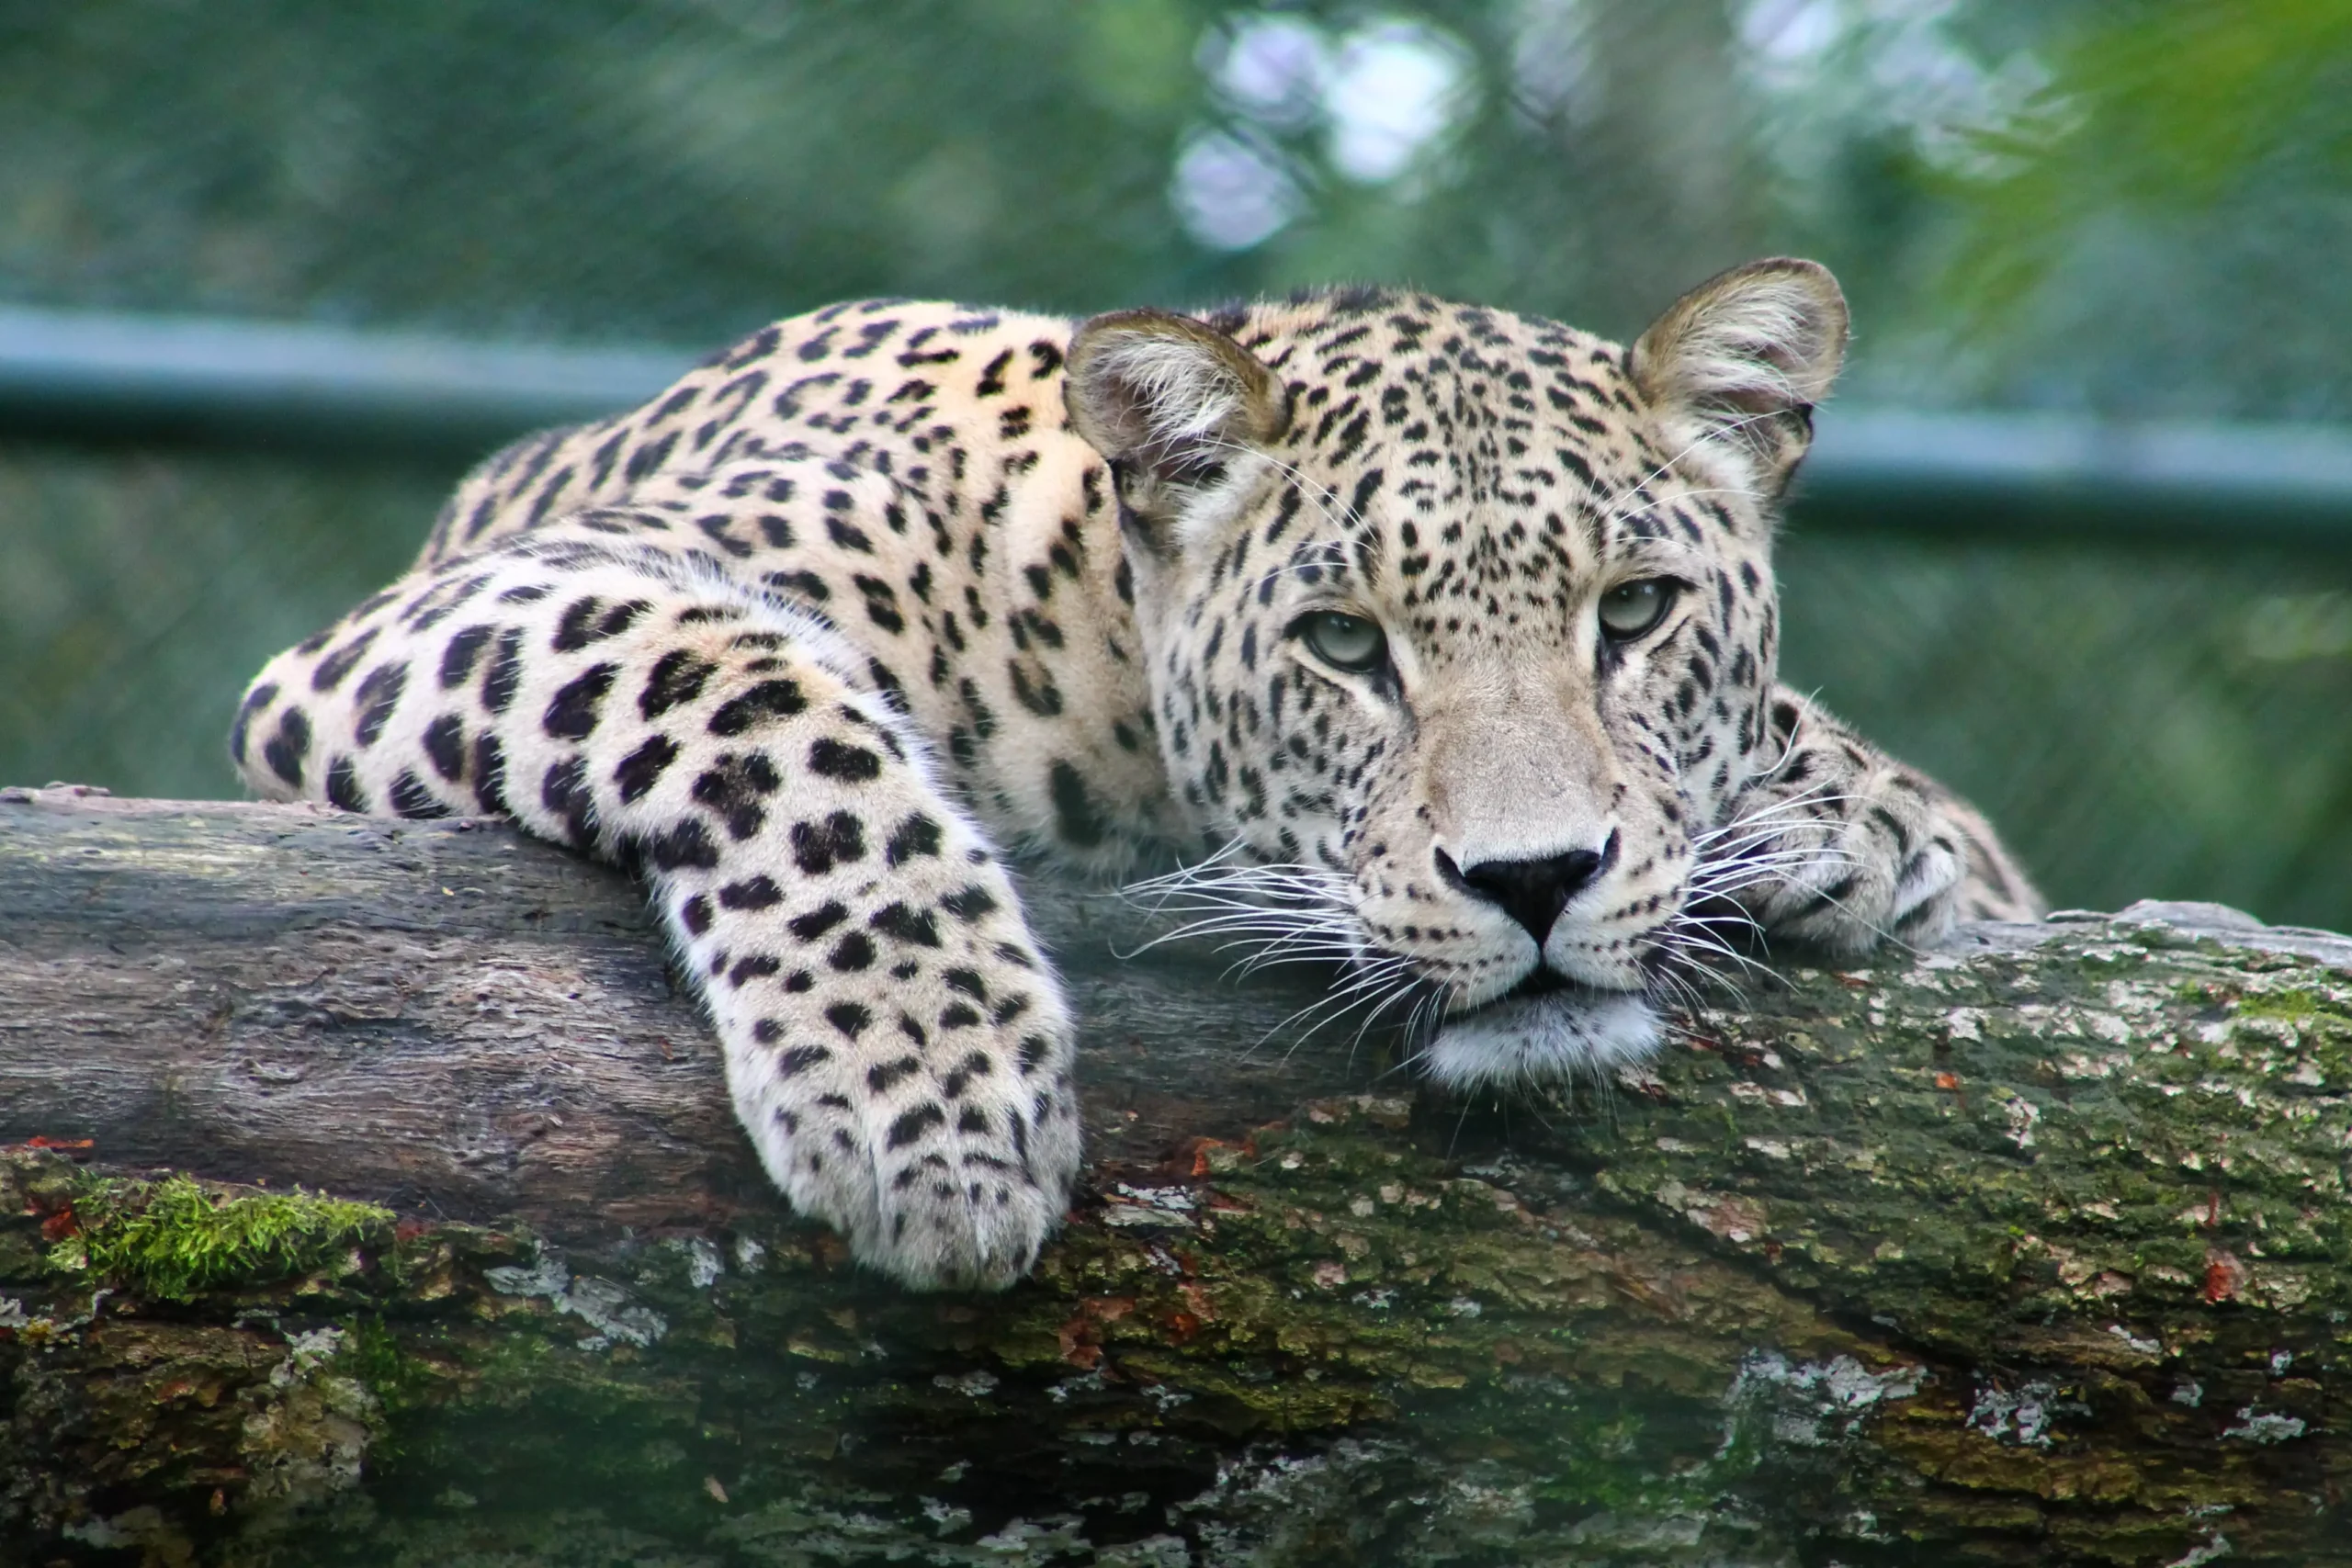 Sri Lankan leopard at Yala national park in Sri Lanka